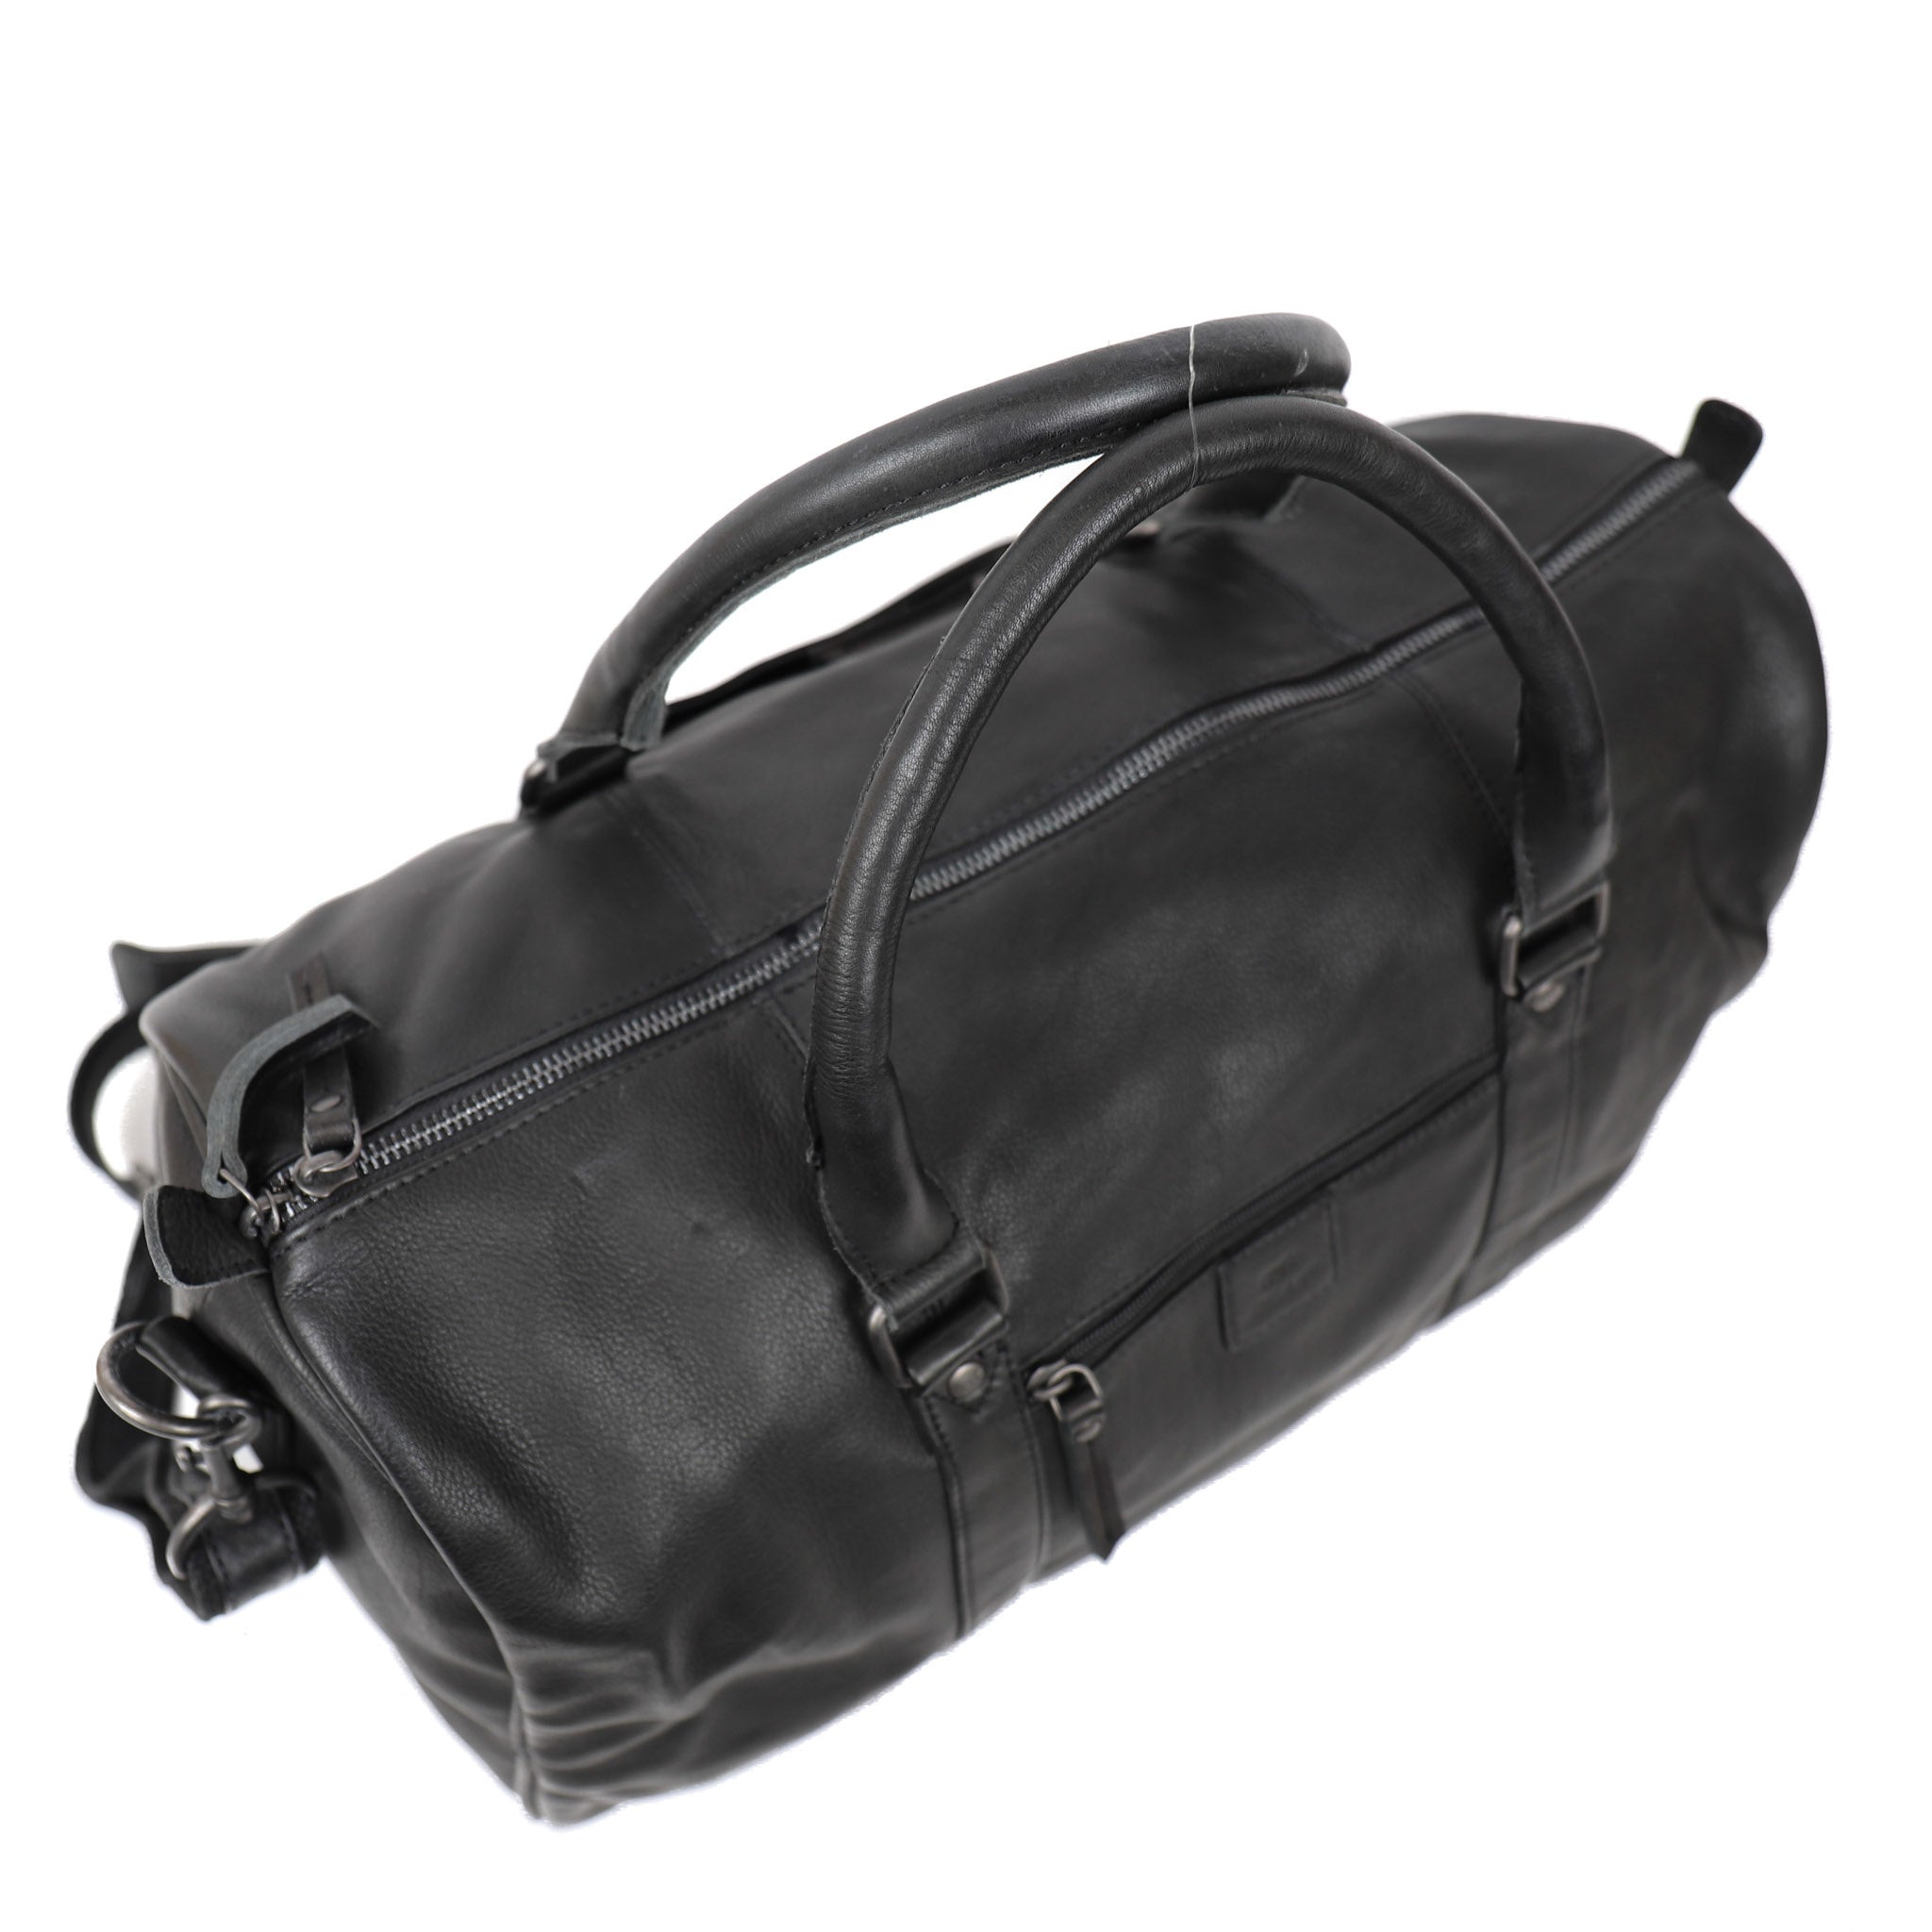 Weekend bag 'Daniel' M black - CP 2293